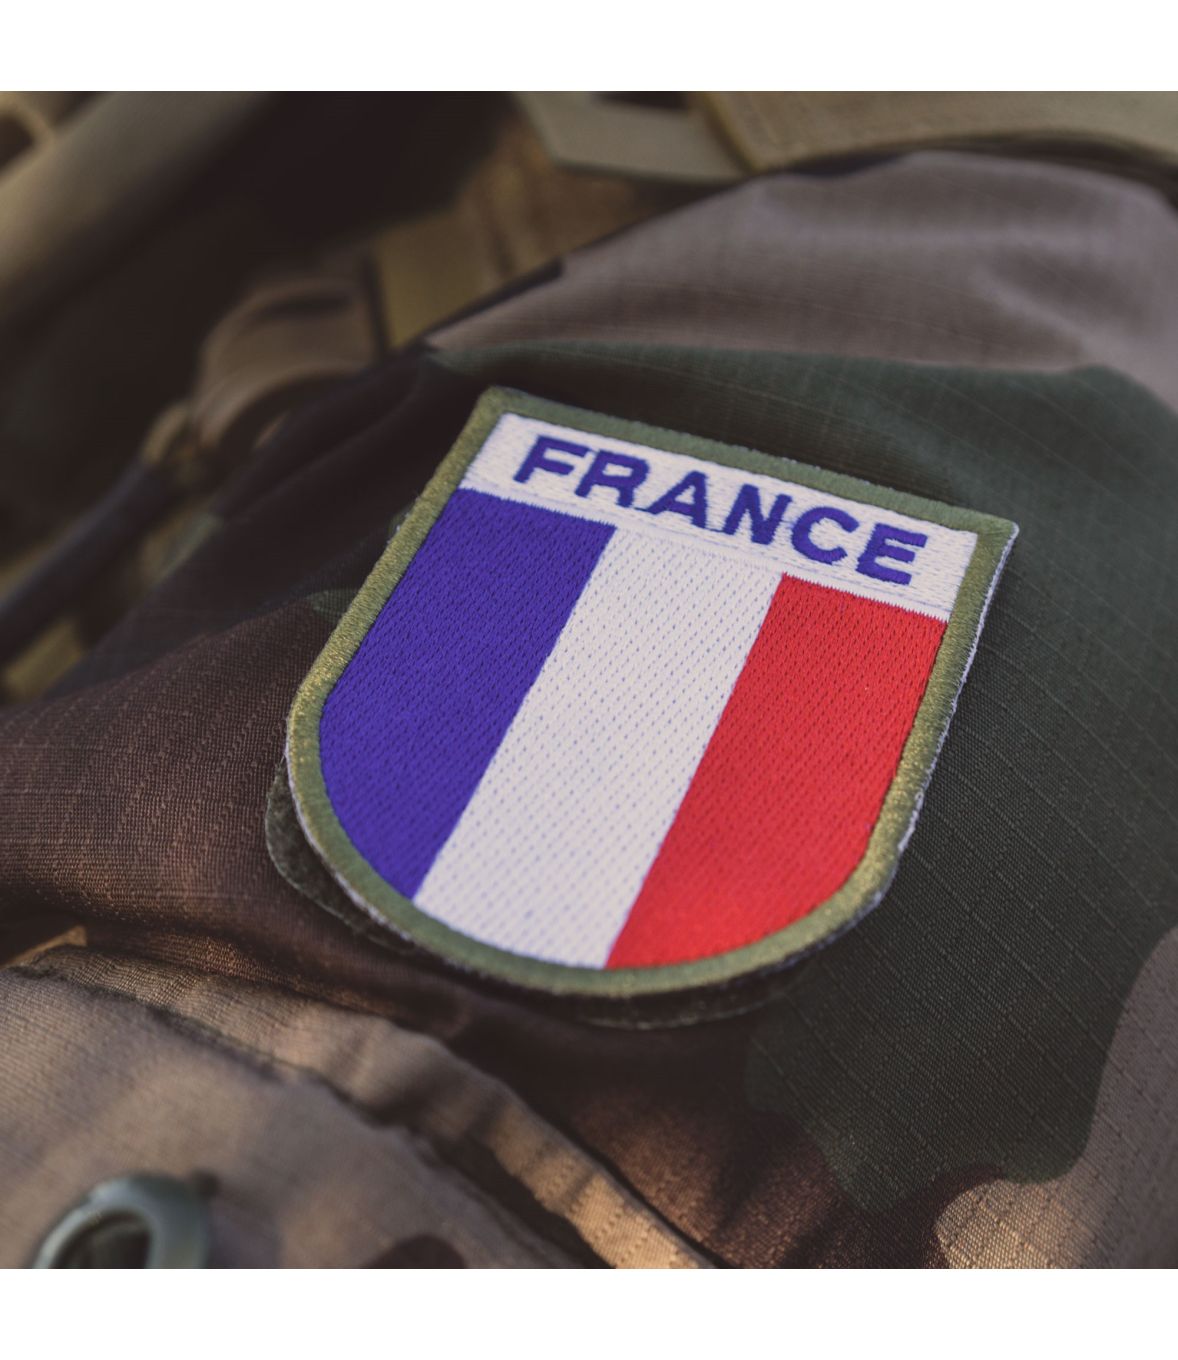 ecusson badge insigne tissu france desert militaire armee